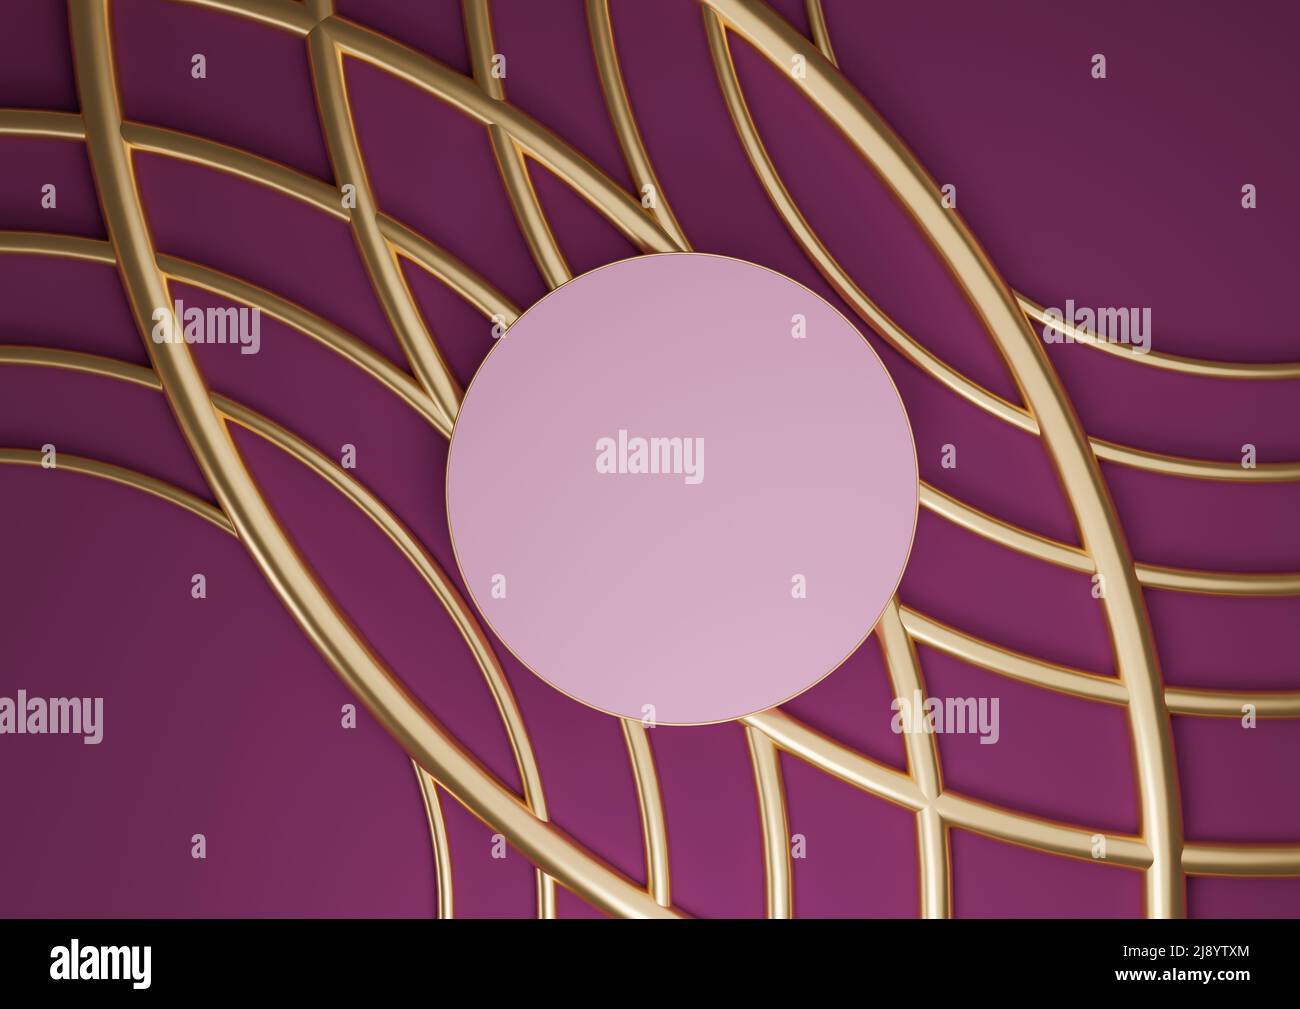 Magenta foncé, violet 3D rendu produit affichage plat poser podium cylindre support luxueuse composition abstraite avec des lignes dorées ornements pour le cosmet Banque D'Images